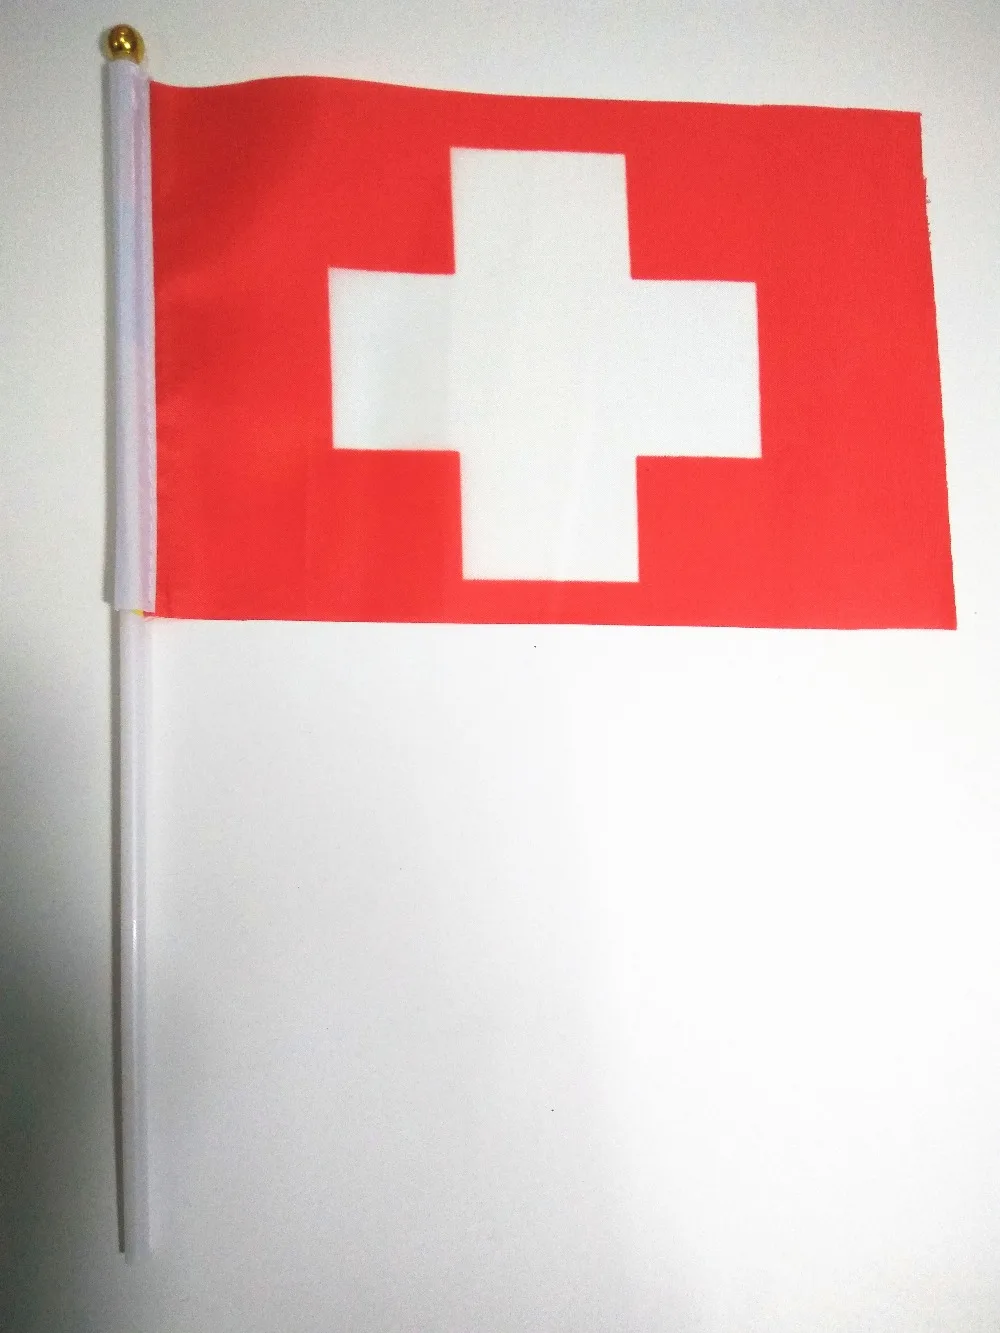 

Оптовая продажа, ручные волнистые баннеры, швейцарские маленькие государственные флаги из полиэстера с шестом 14*21 см